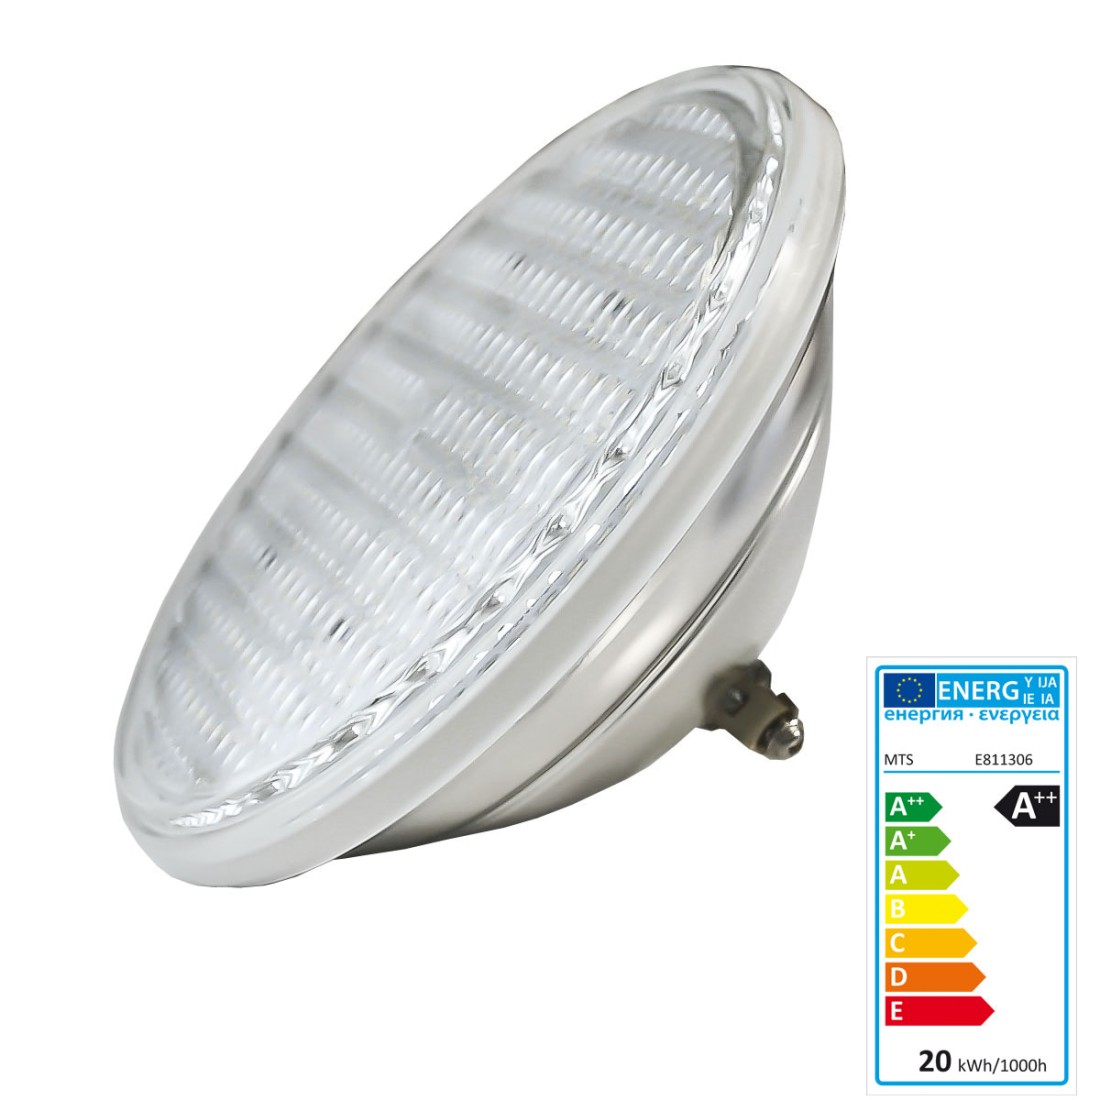 LED Seamaid Ersatzleuchtmittel weiß 13,5 W PAR56